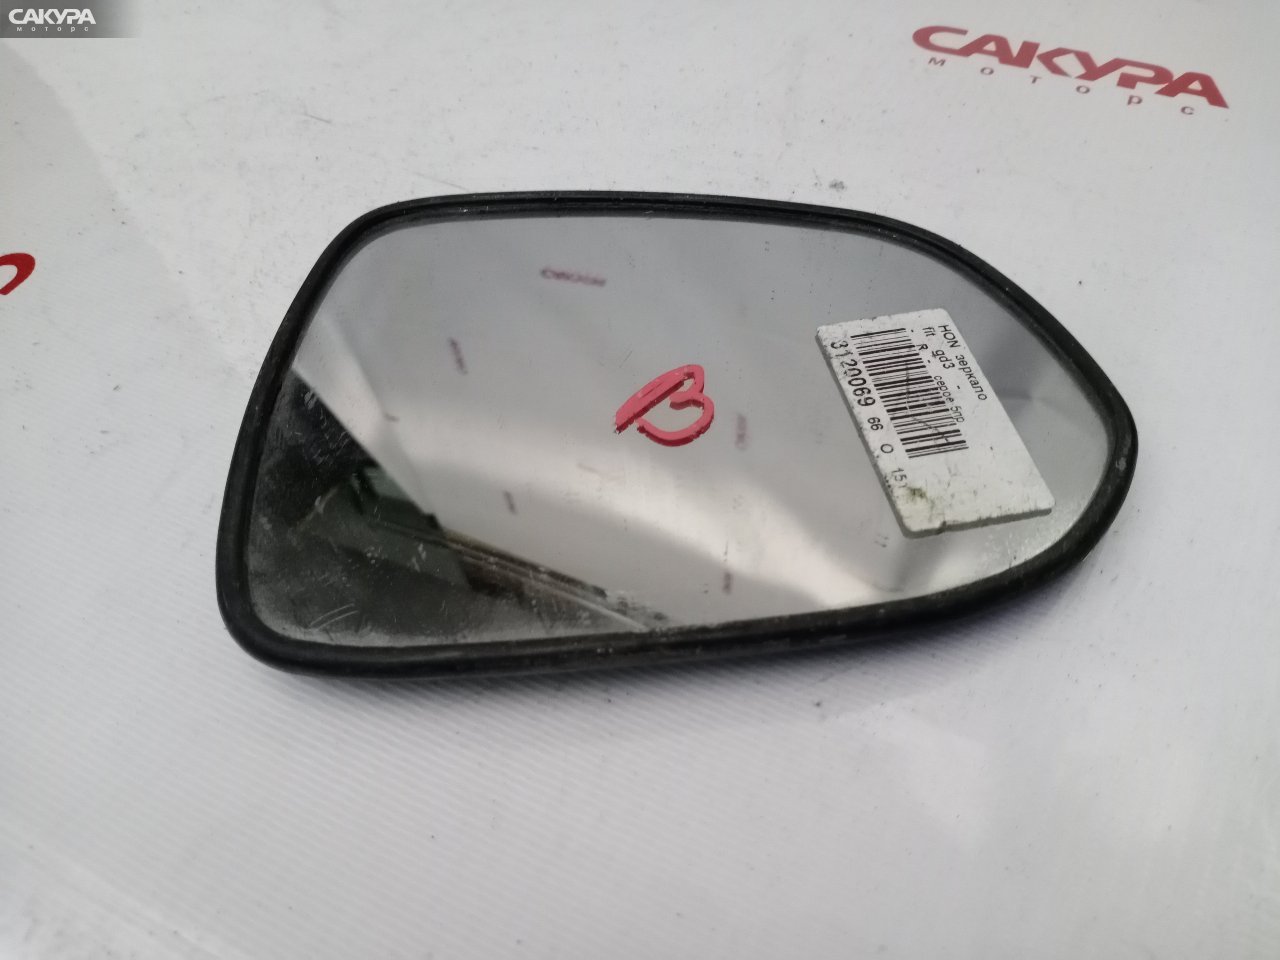 Зеркало боковое правое Honda FIT GD3: купить в Сакура Красноярск.